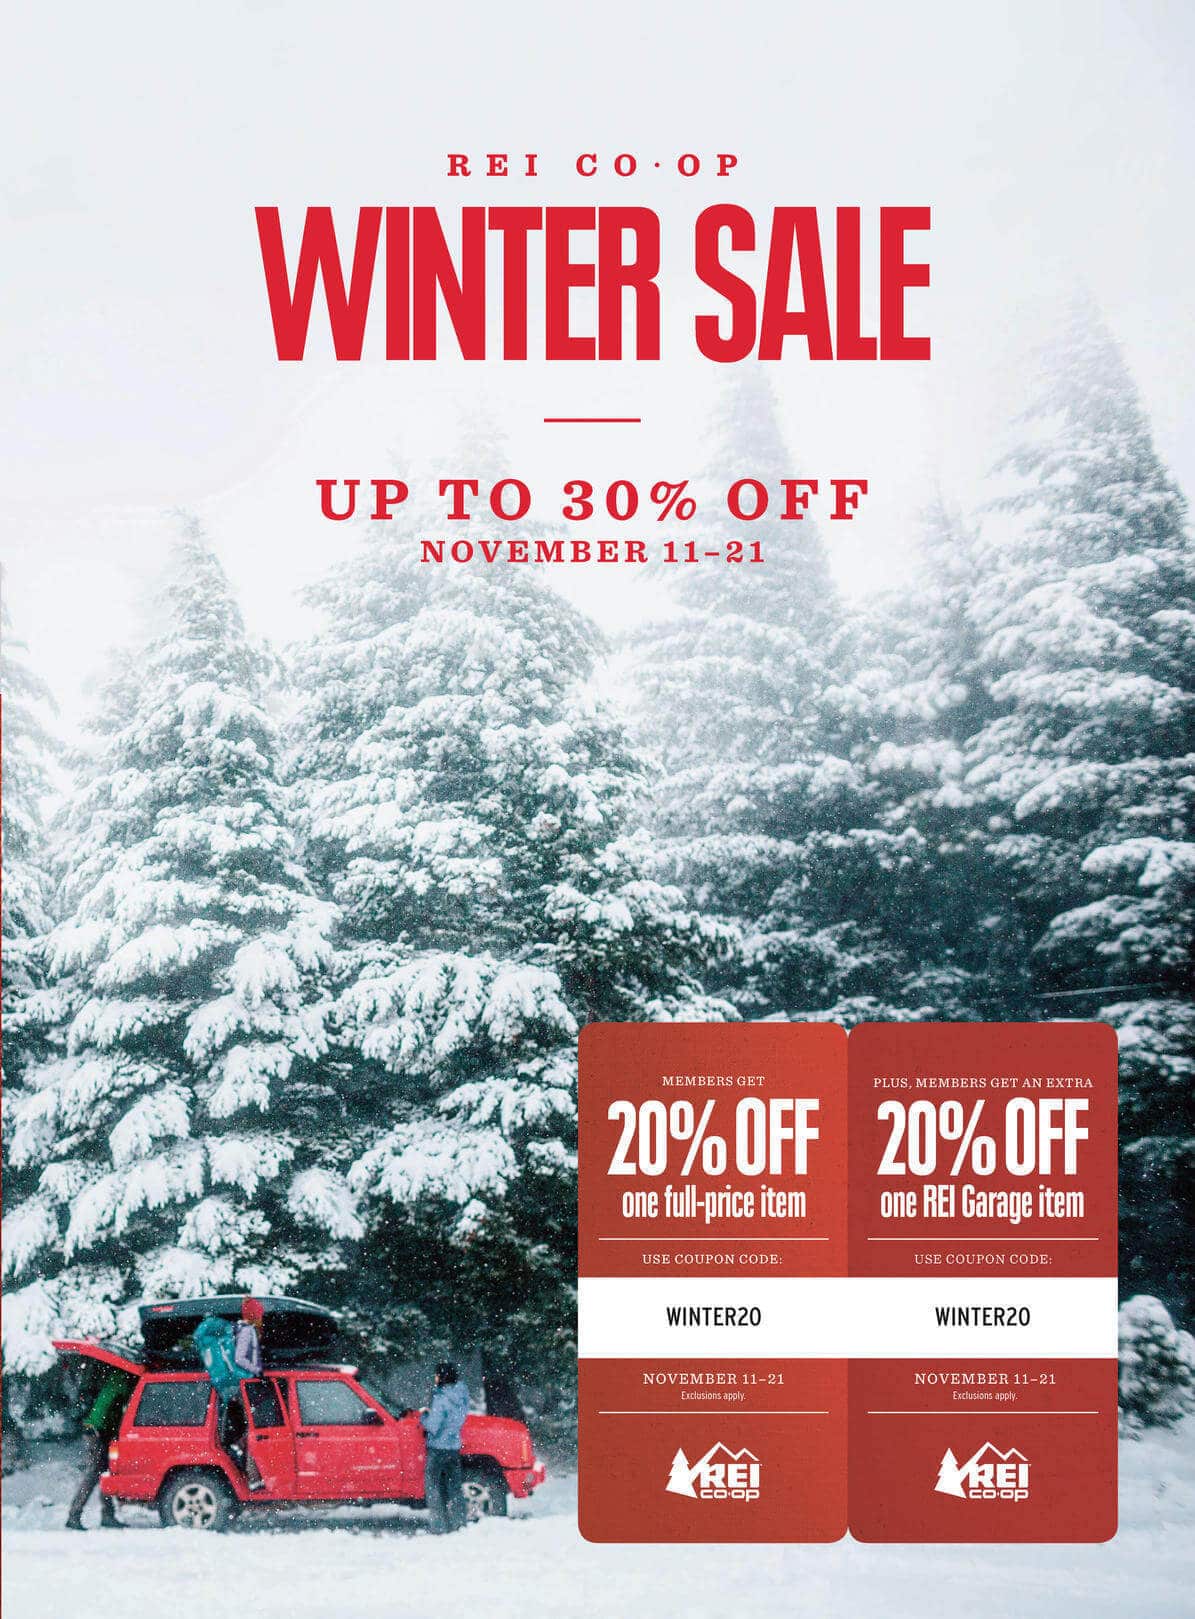 REI Winter Sale Ad 2016